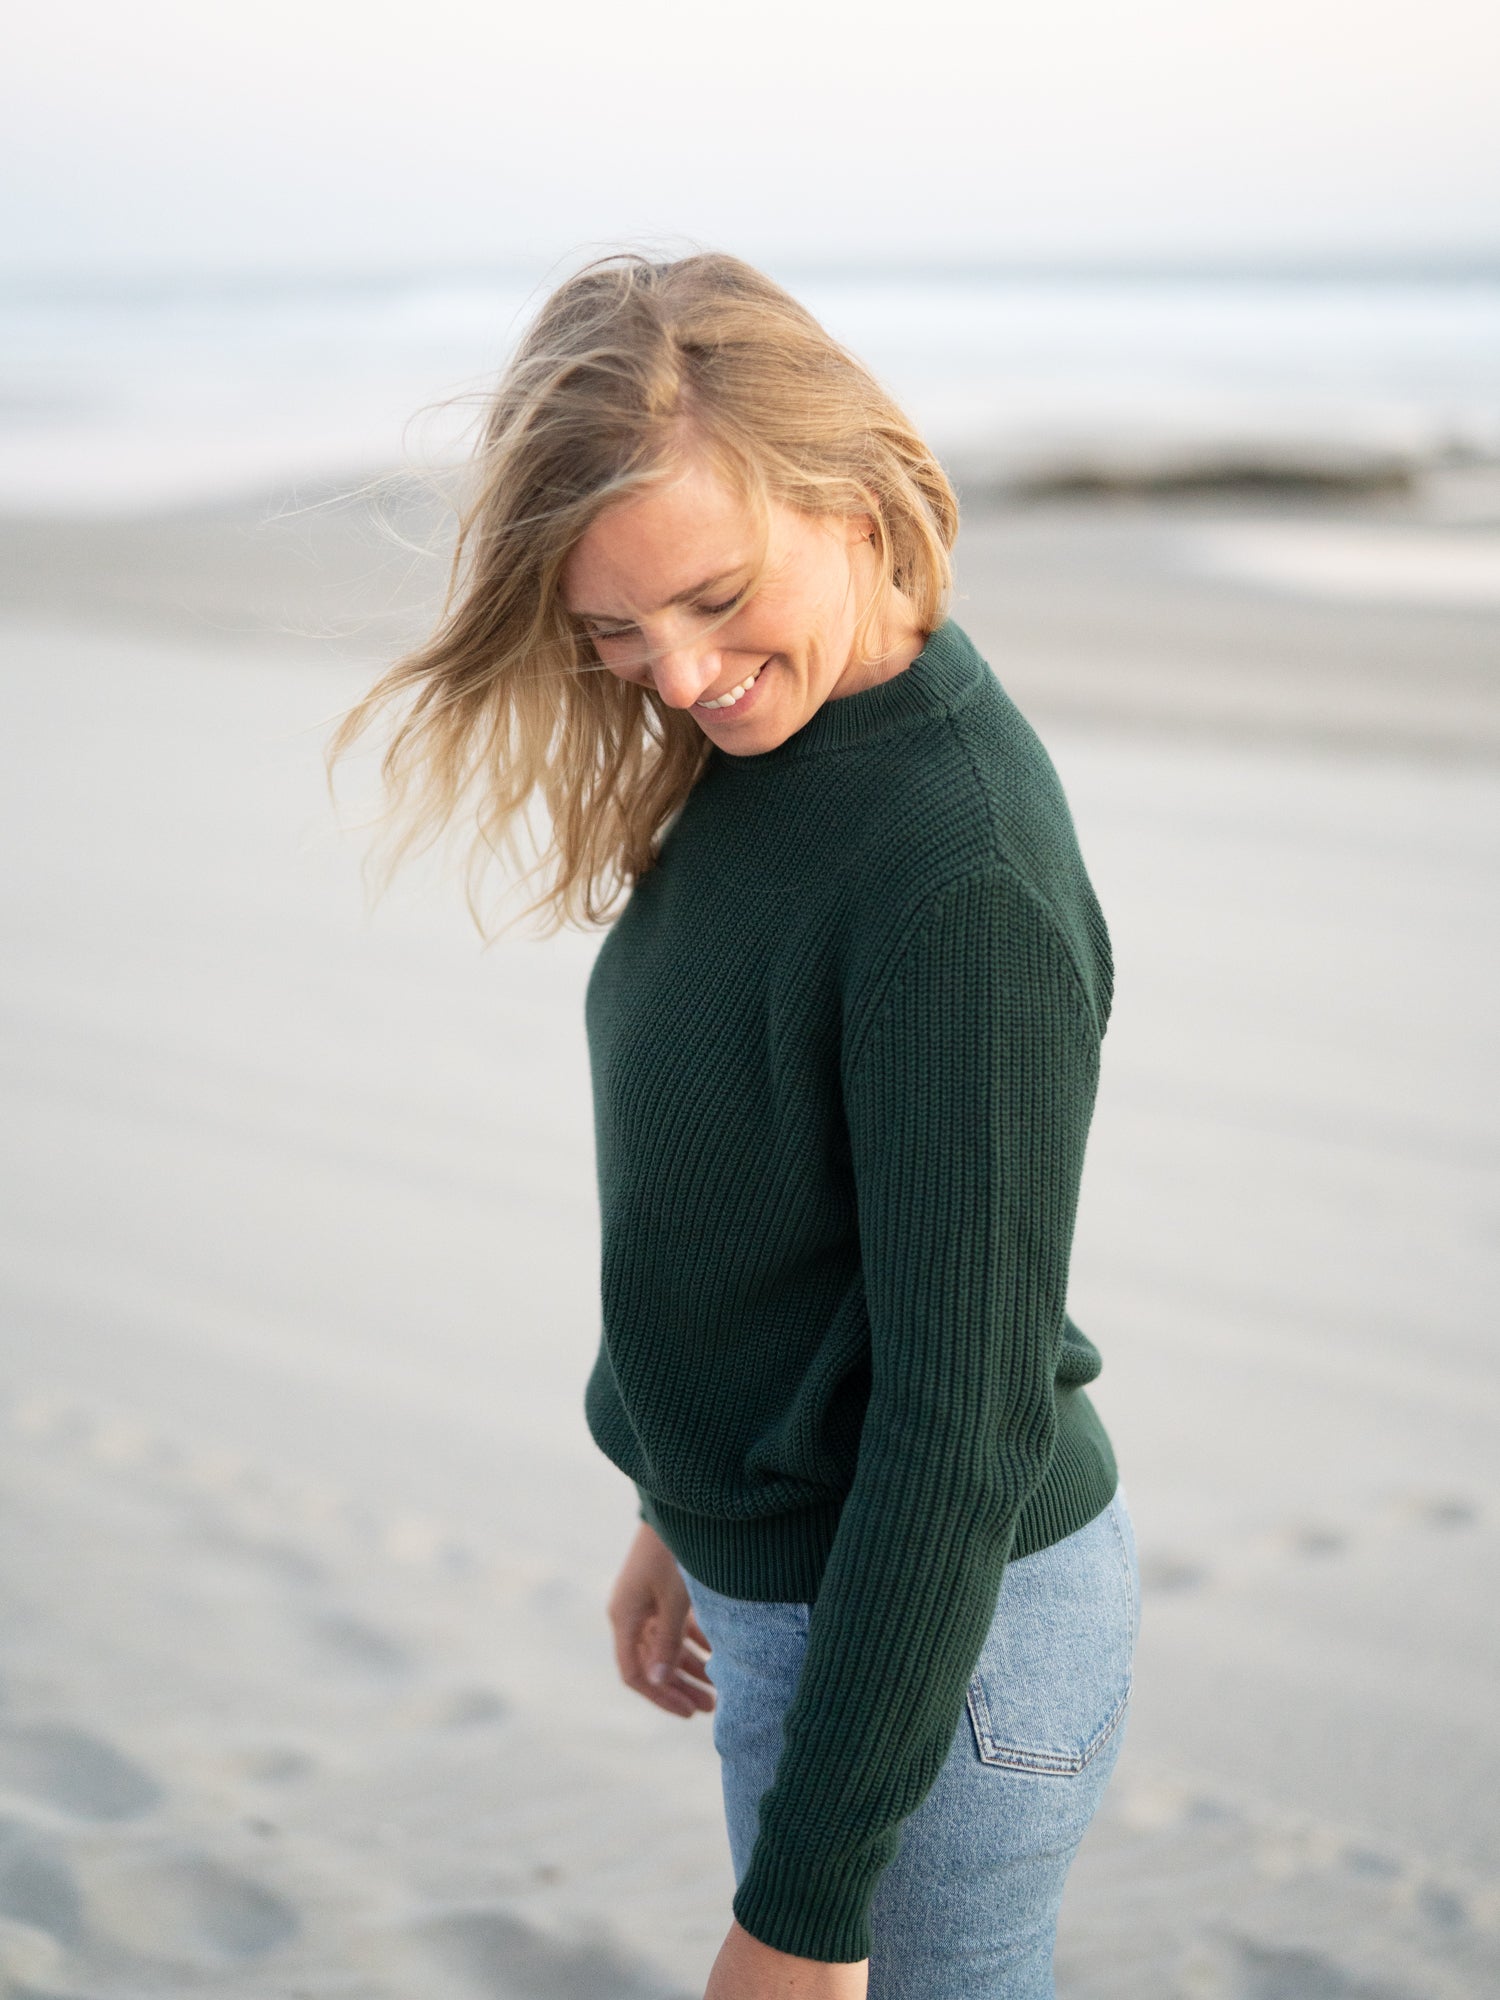 Isi trägt unseren FUXBAU 4Seasons STrickpullover in waldgrün aus 100% GOTS zertifizierter Biobaumwolle am Strand in Portugal.